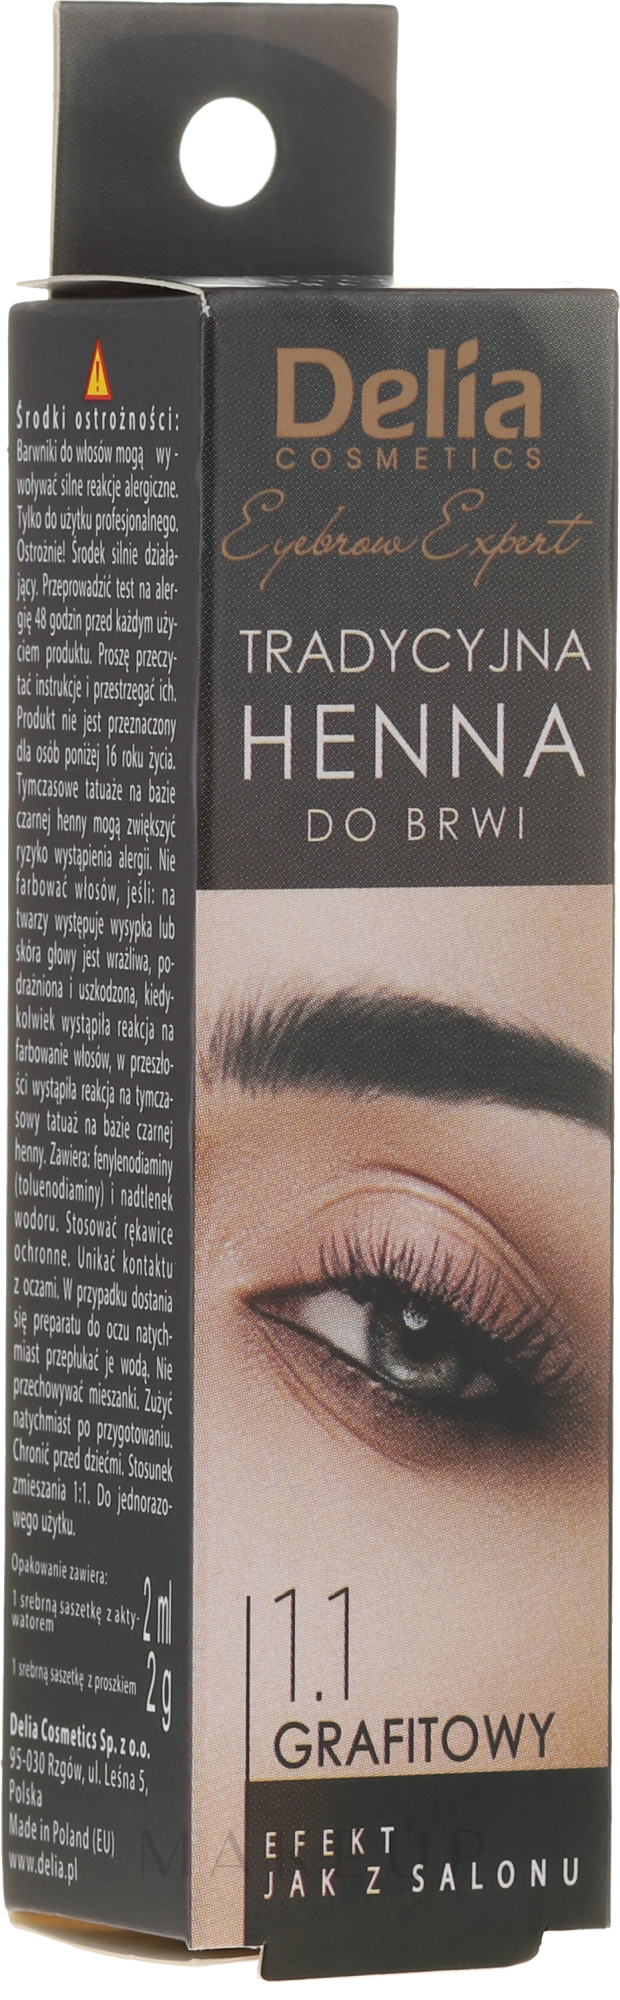 Henna für Augenbrauen - Delia Hanna Traditional — Foto 1.1 Gray